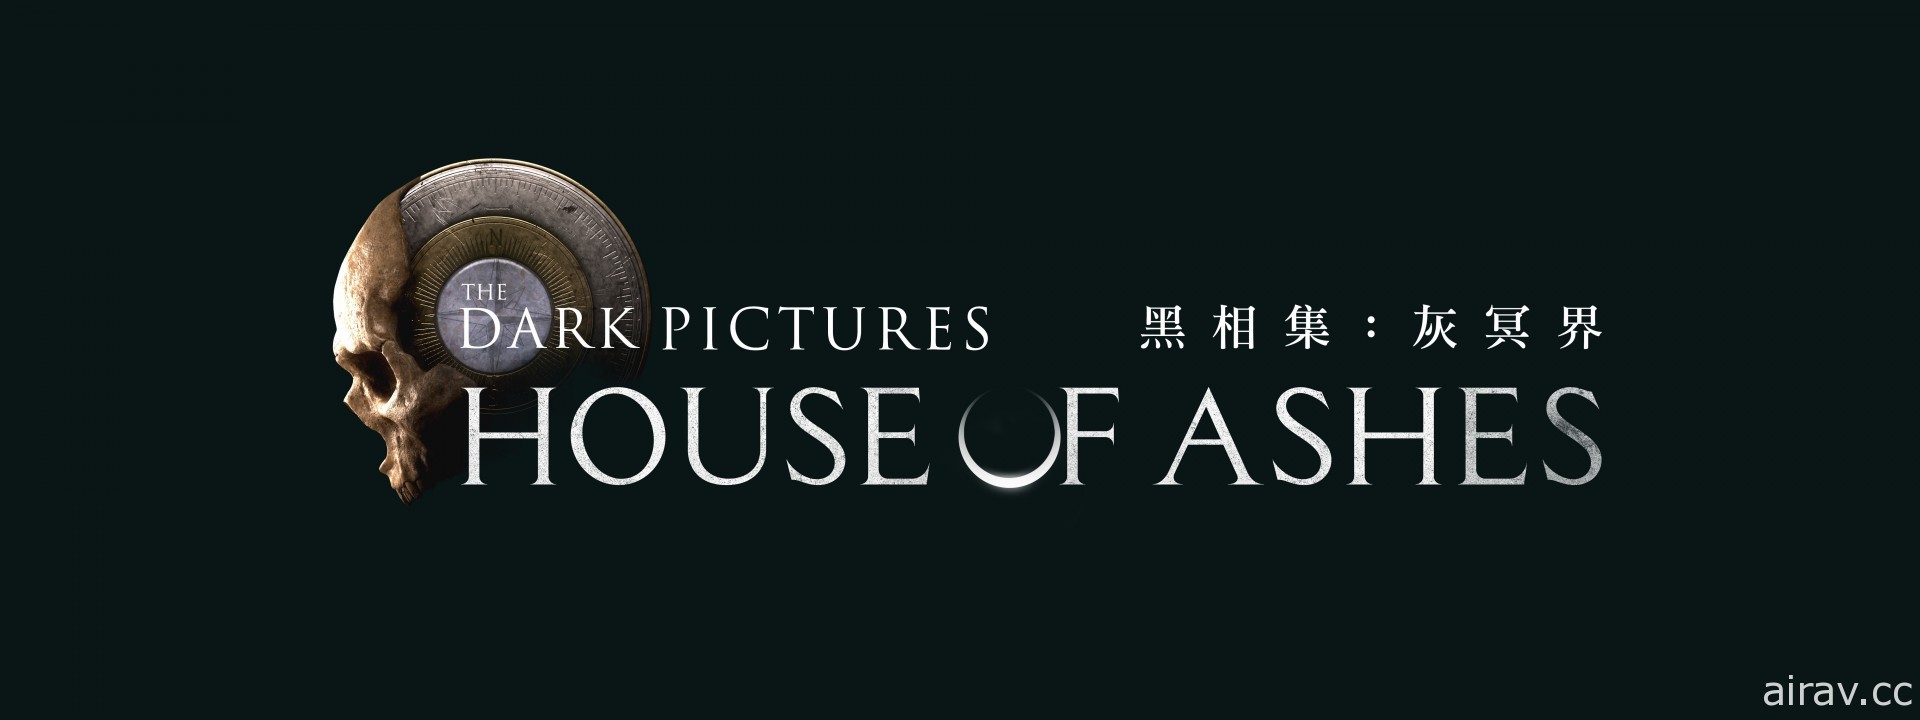 恐怖驚悚系列《黑相集》第三彈作品《黑相集：灰冥界》中文版預定 2021 年發售